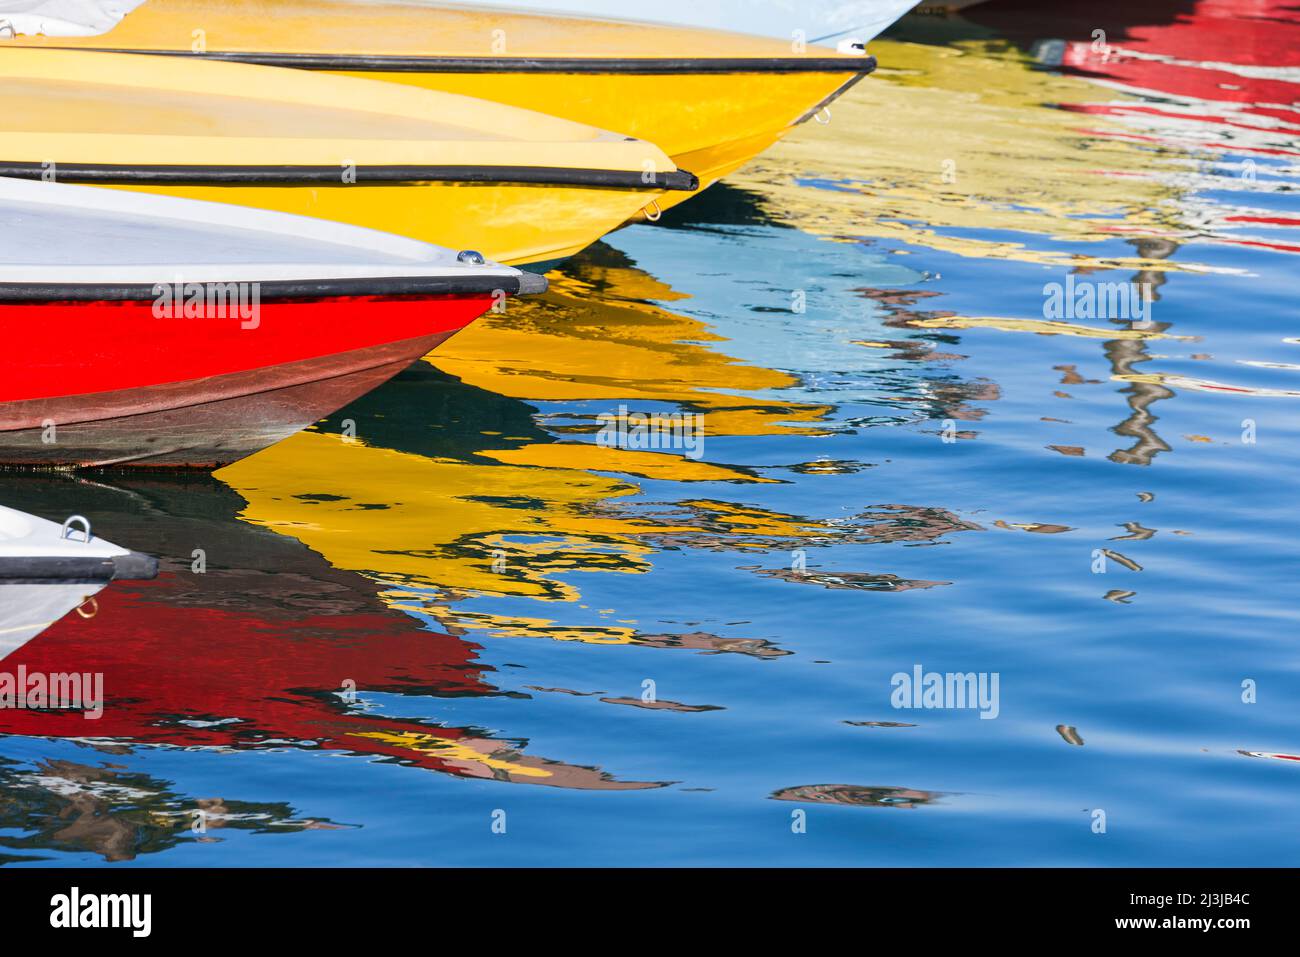 Bunte Boote liegen nebeneinander in einem der Wasserkanäle von Venedig, spiegeln sich im Wasser, Italien, Venetien Stockfoto